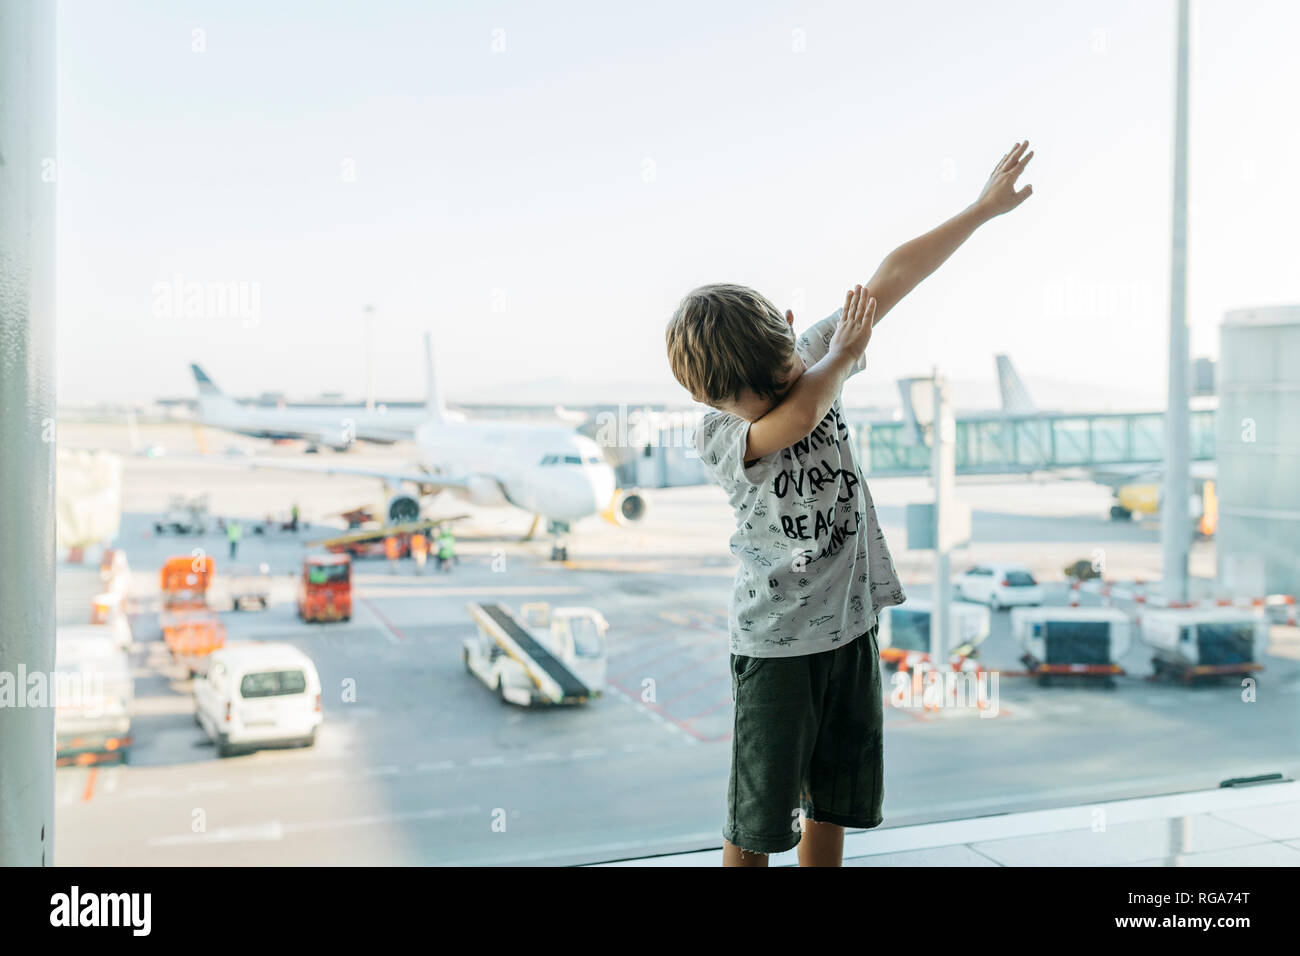 La Spagna, l'aeroporto di Barcellona, ragazzo in zona partenza, fingendo di volare Foto Stock